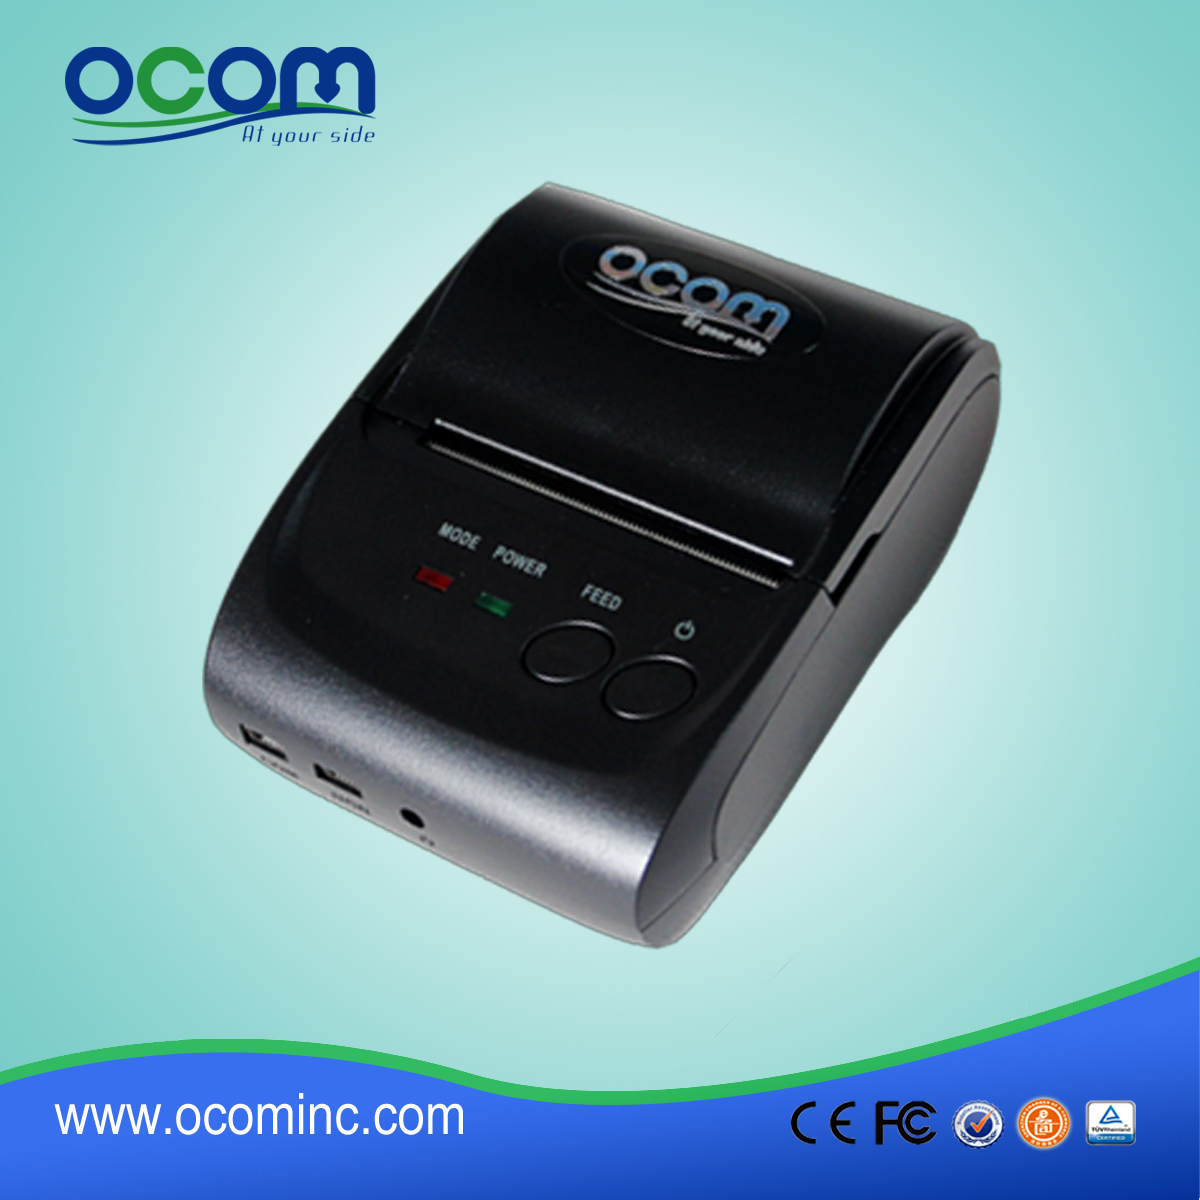 OCPP-M05: جودة عالية صغيرة محمولة بلوتوث سعر الطابعة المحمول